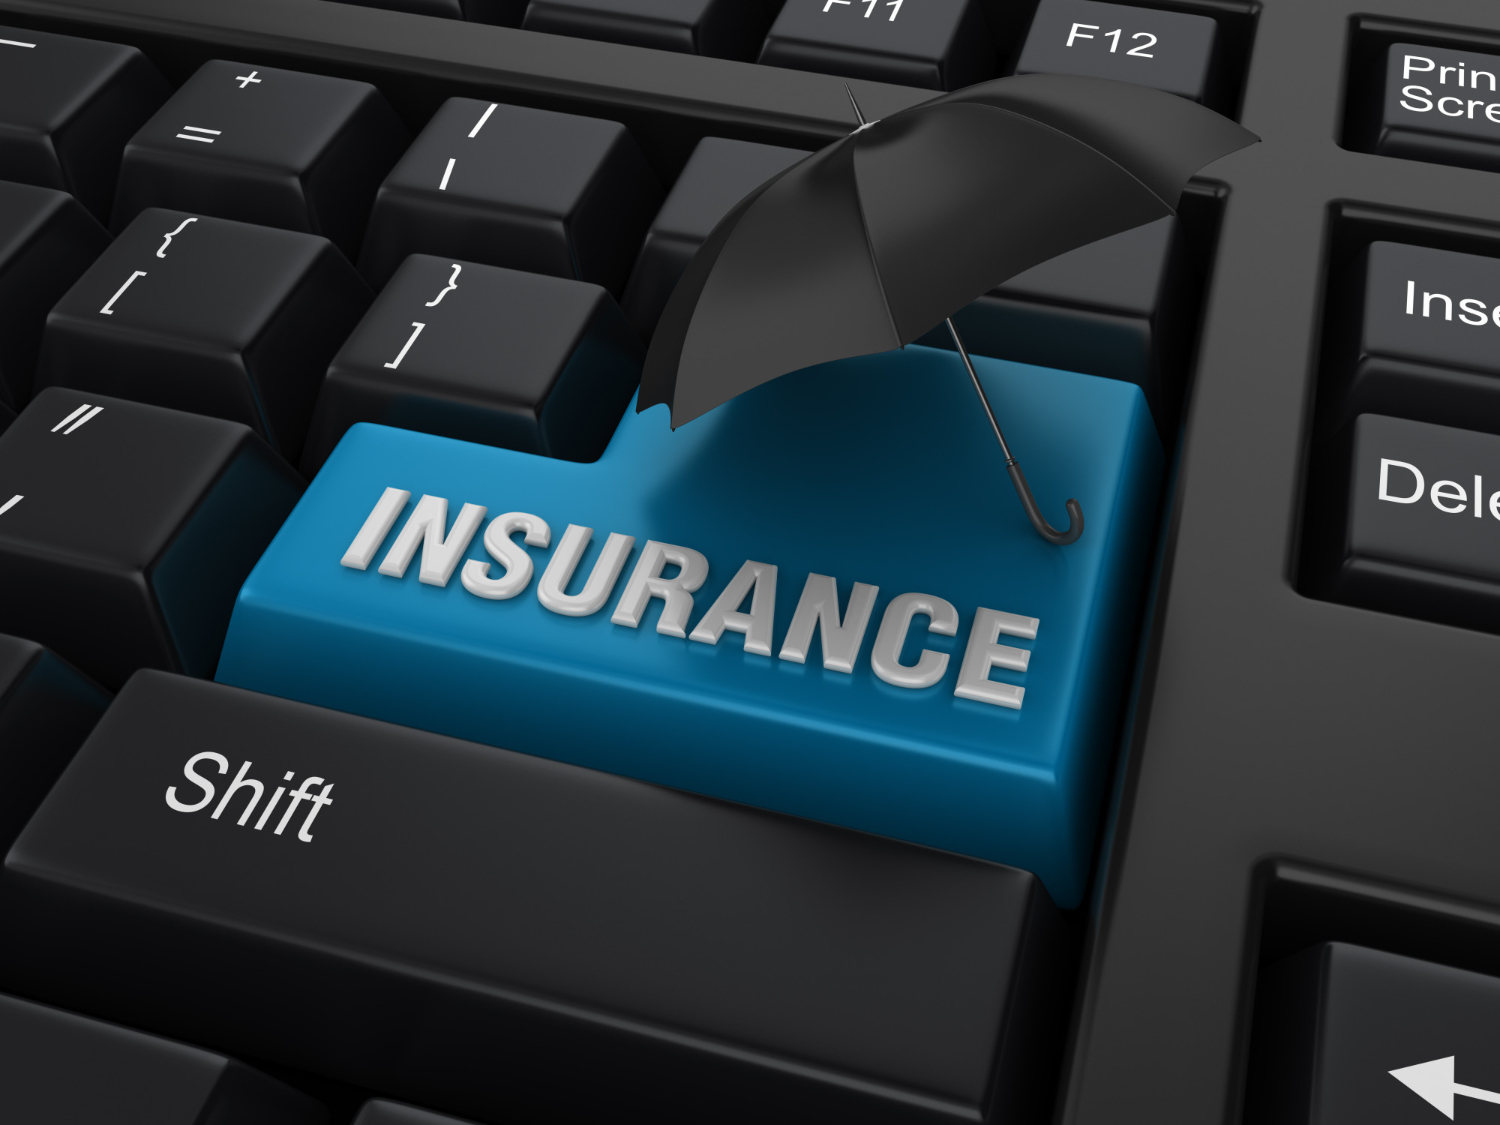 The word "insurance" written on a black keyboard